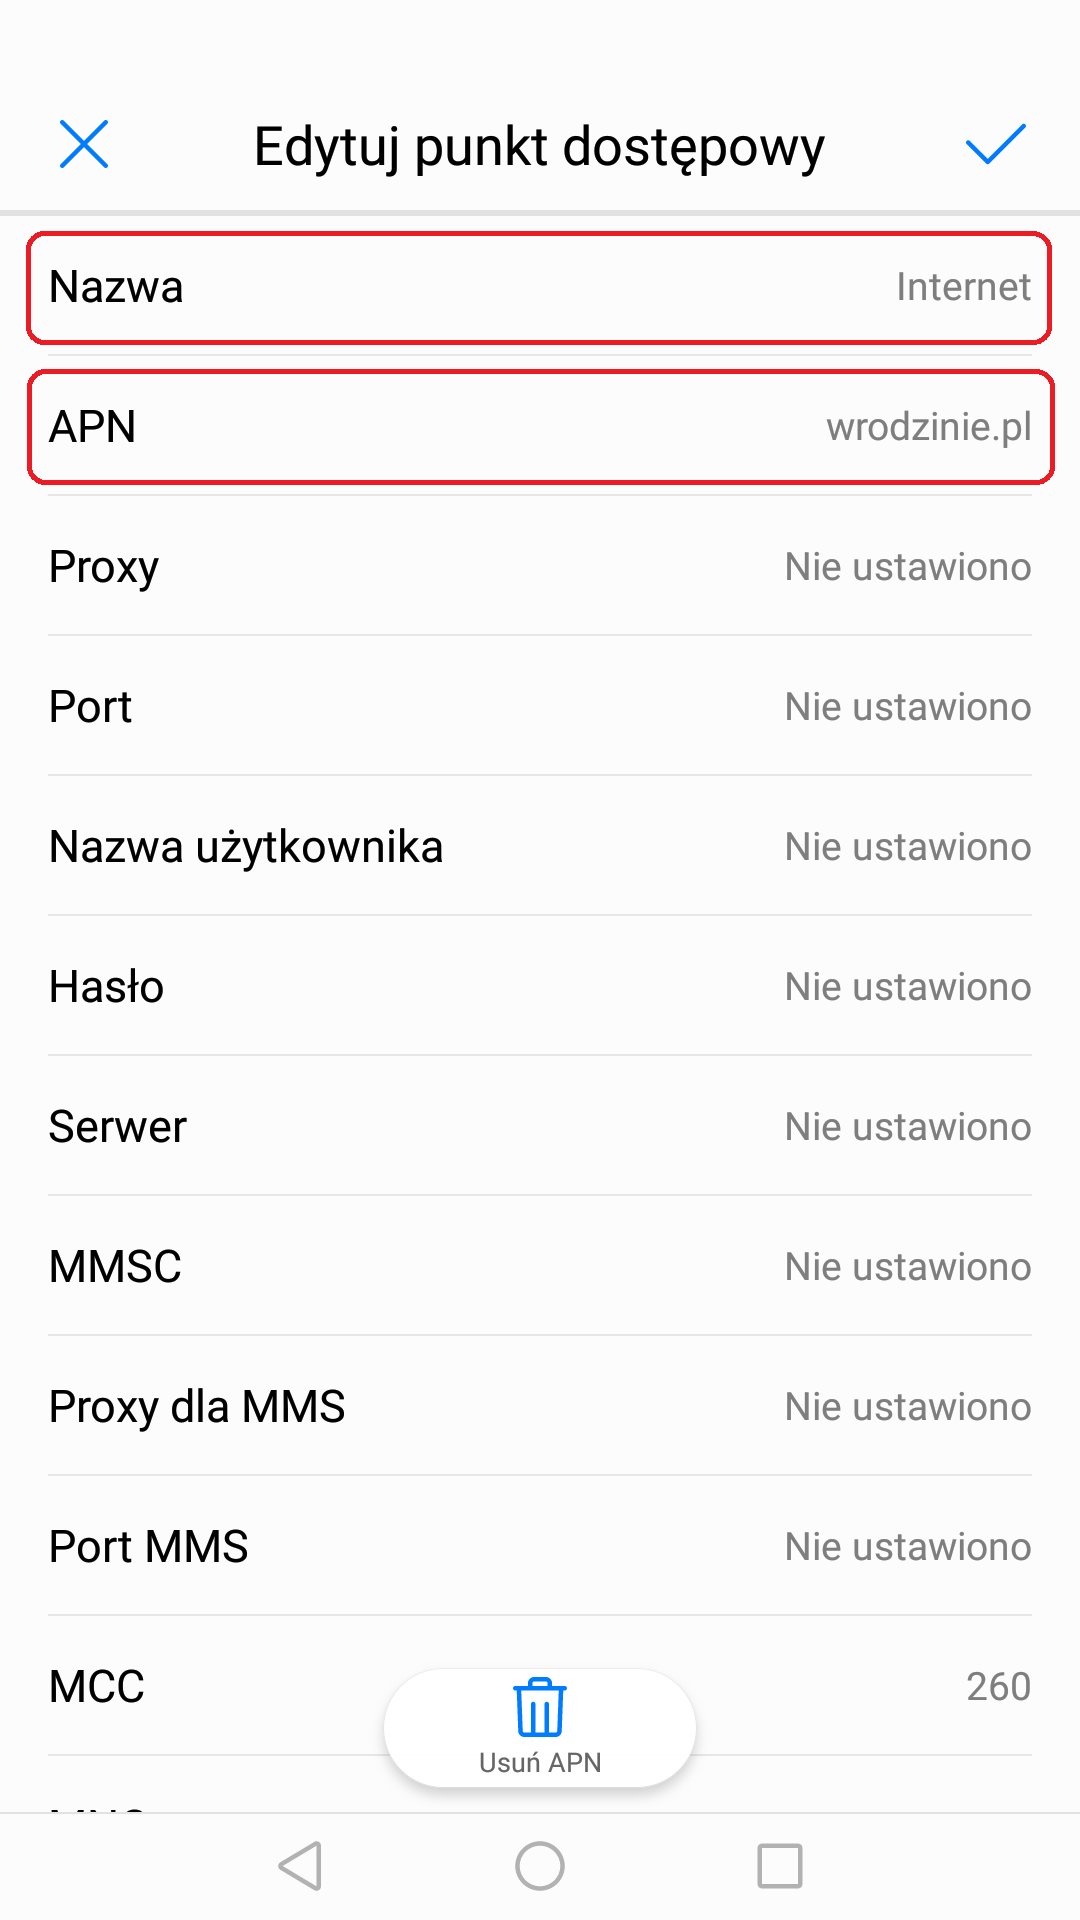 Jako nazwa powinieneś mieć wpisane: Internet, a APN: wrodzinie.pl